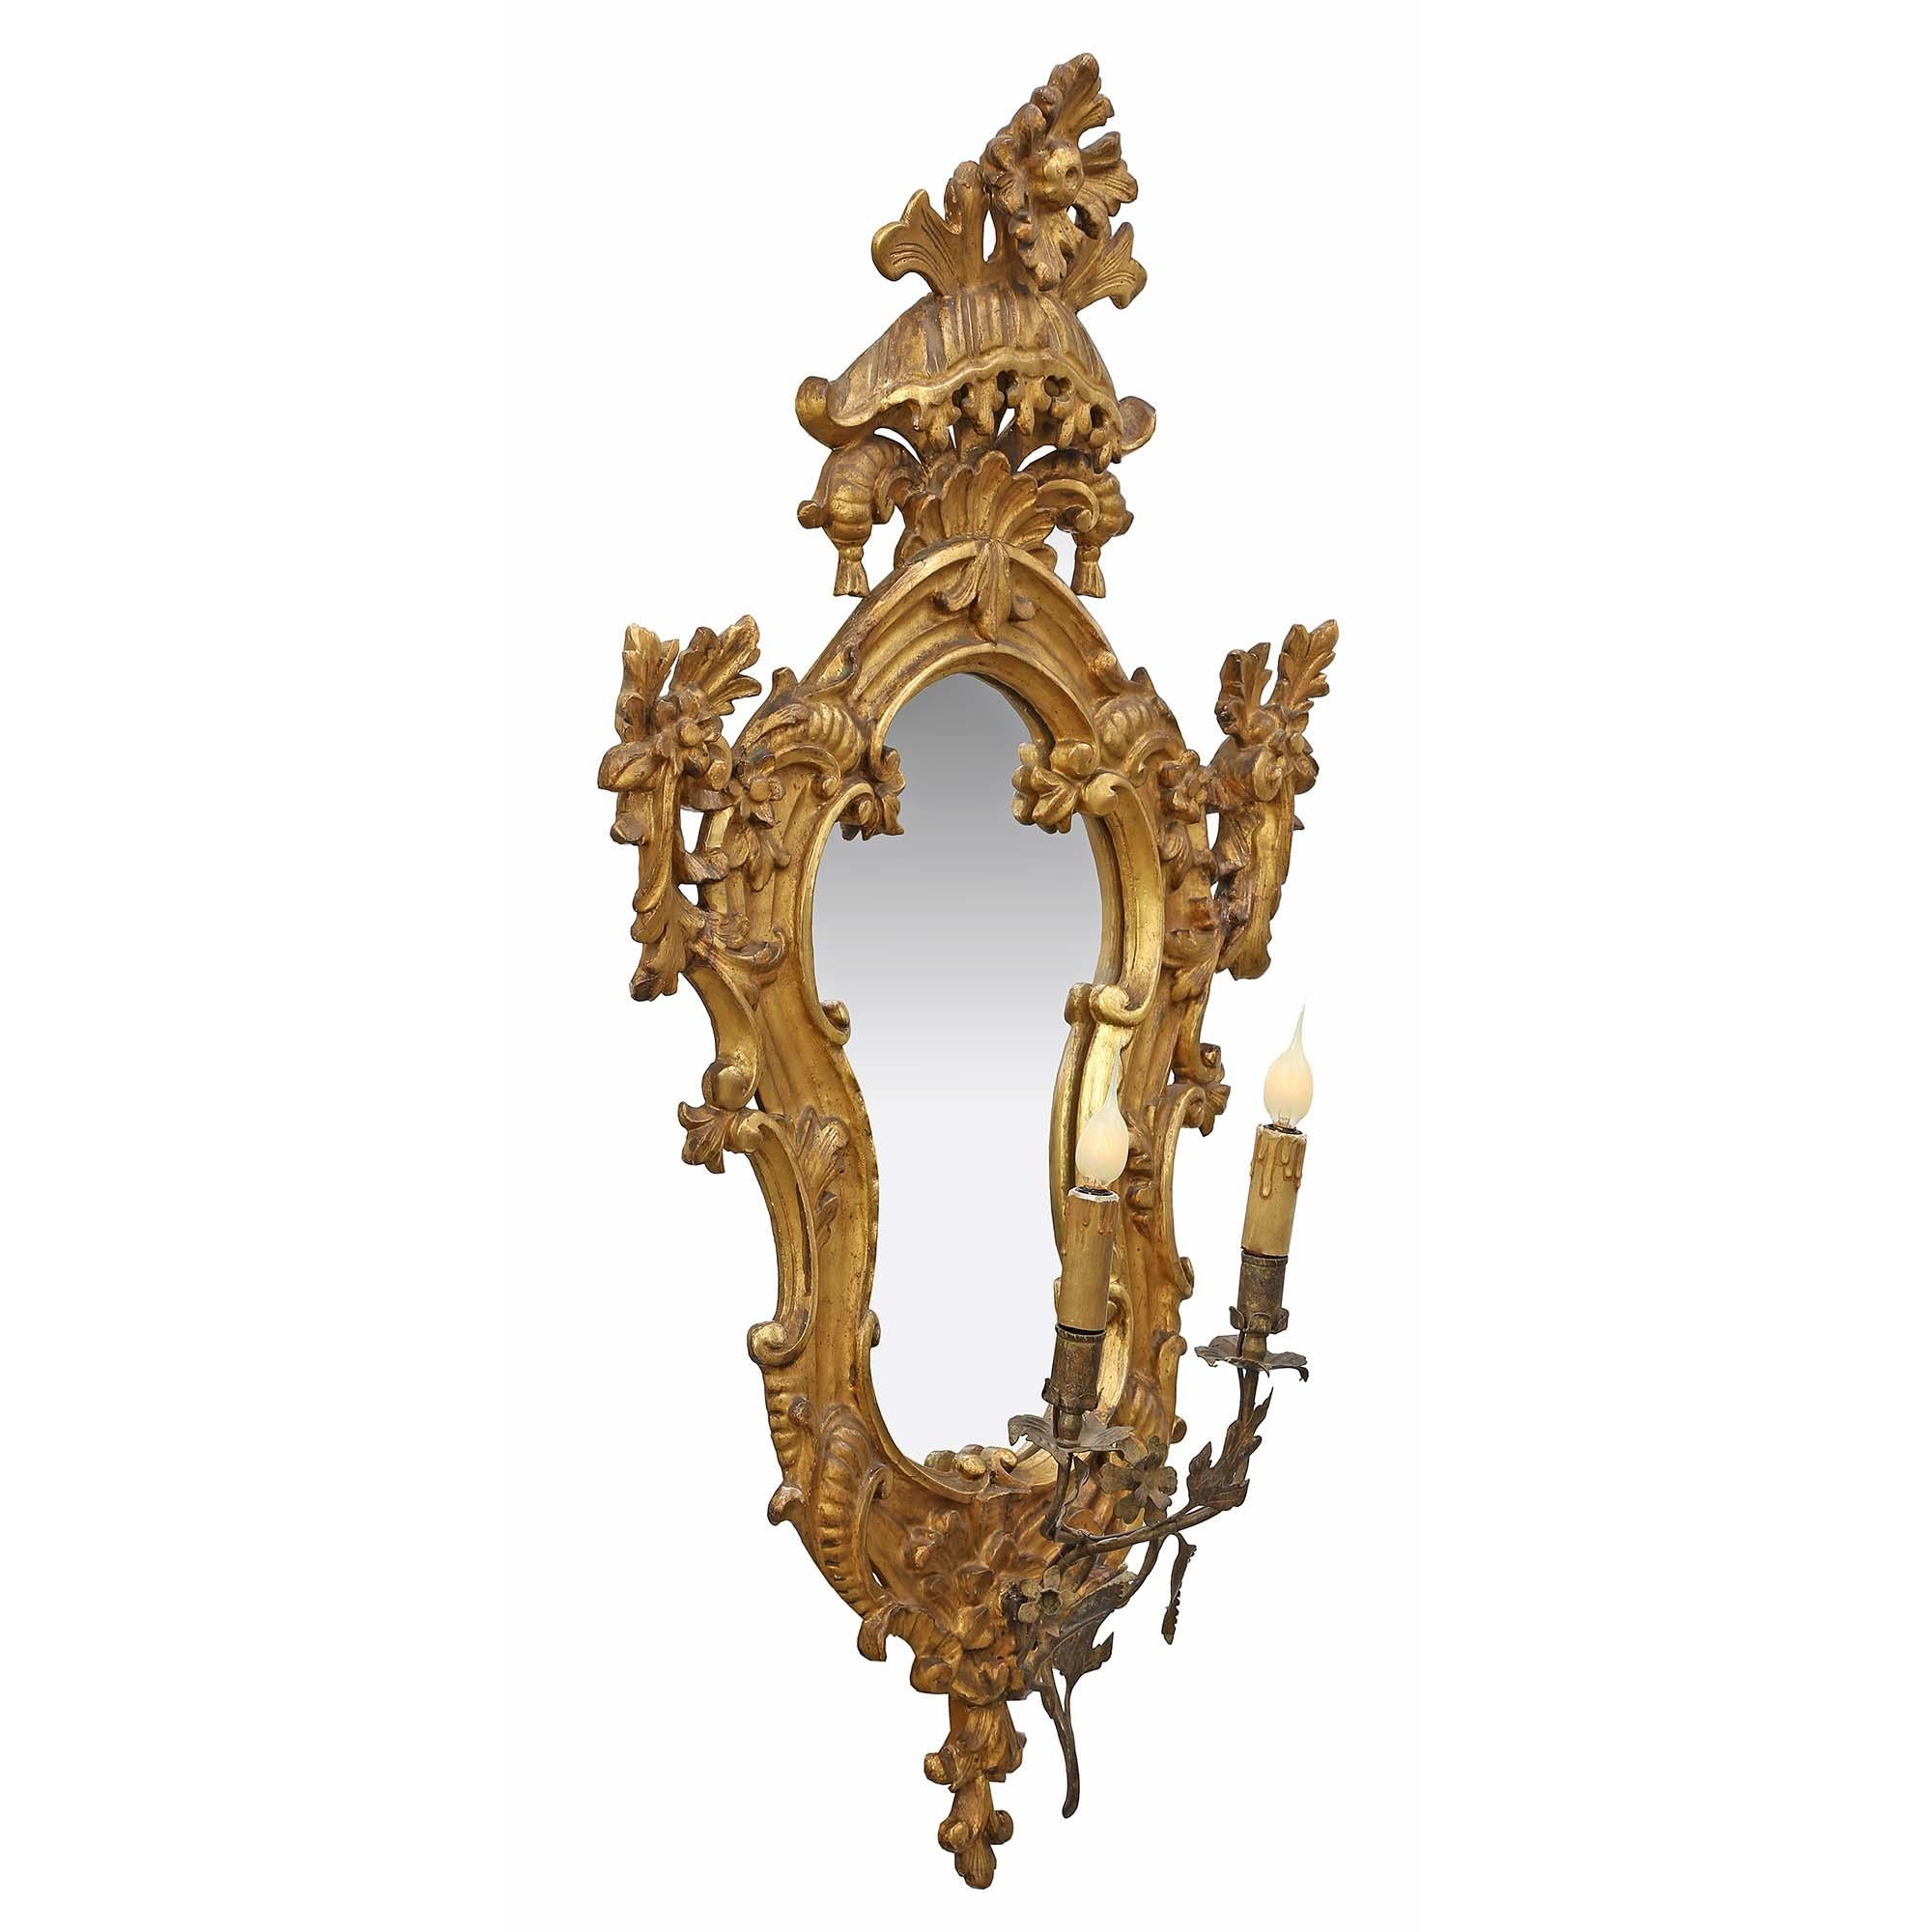 Une paire sensationnelle et de haute qualité d'appliques électrifiées italiennes du milieu du 18e siècle en bois doré avec miroir. La paire avec toutes les plaques dorées et les miroirs d'origine présente un motif à volutes avec des fleurs